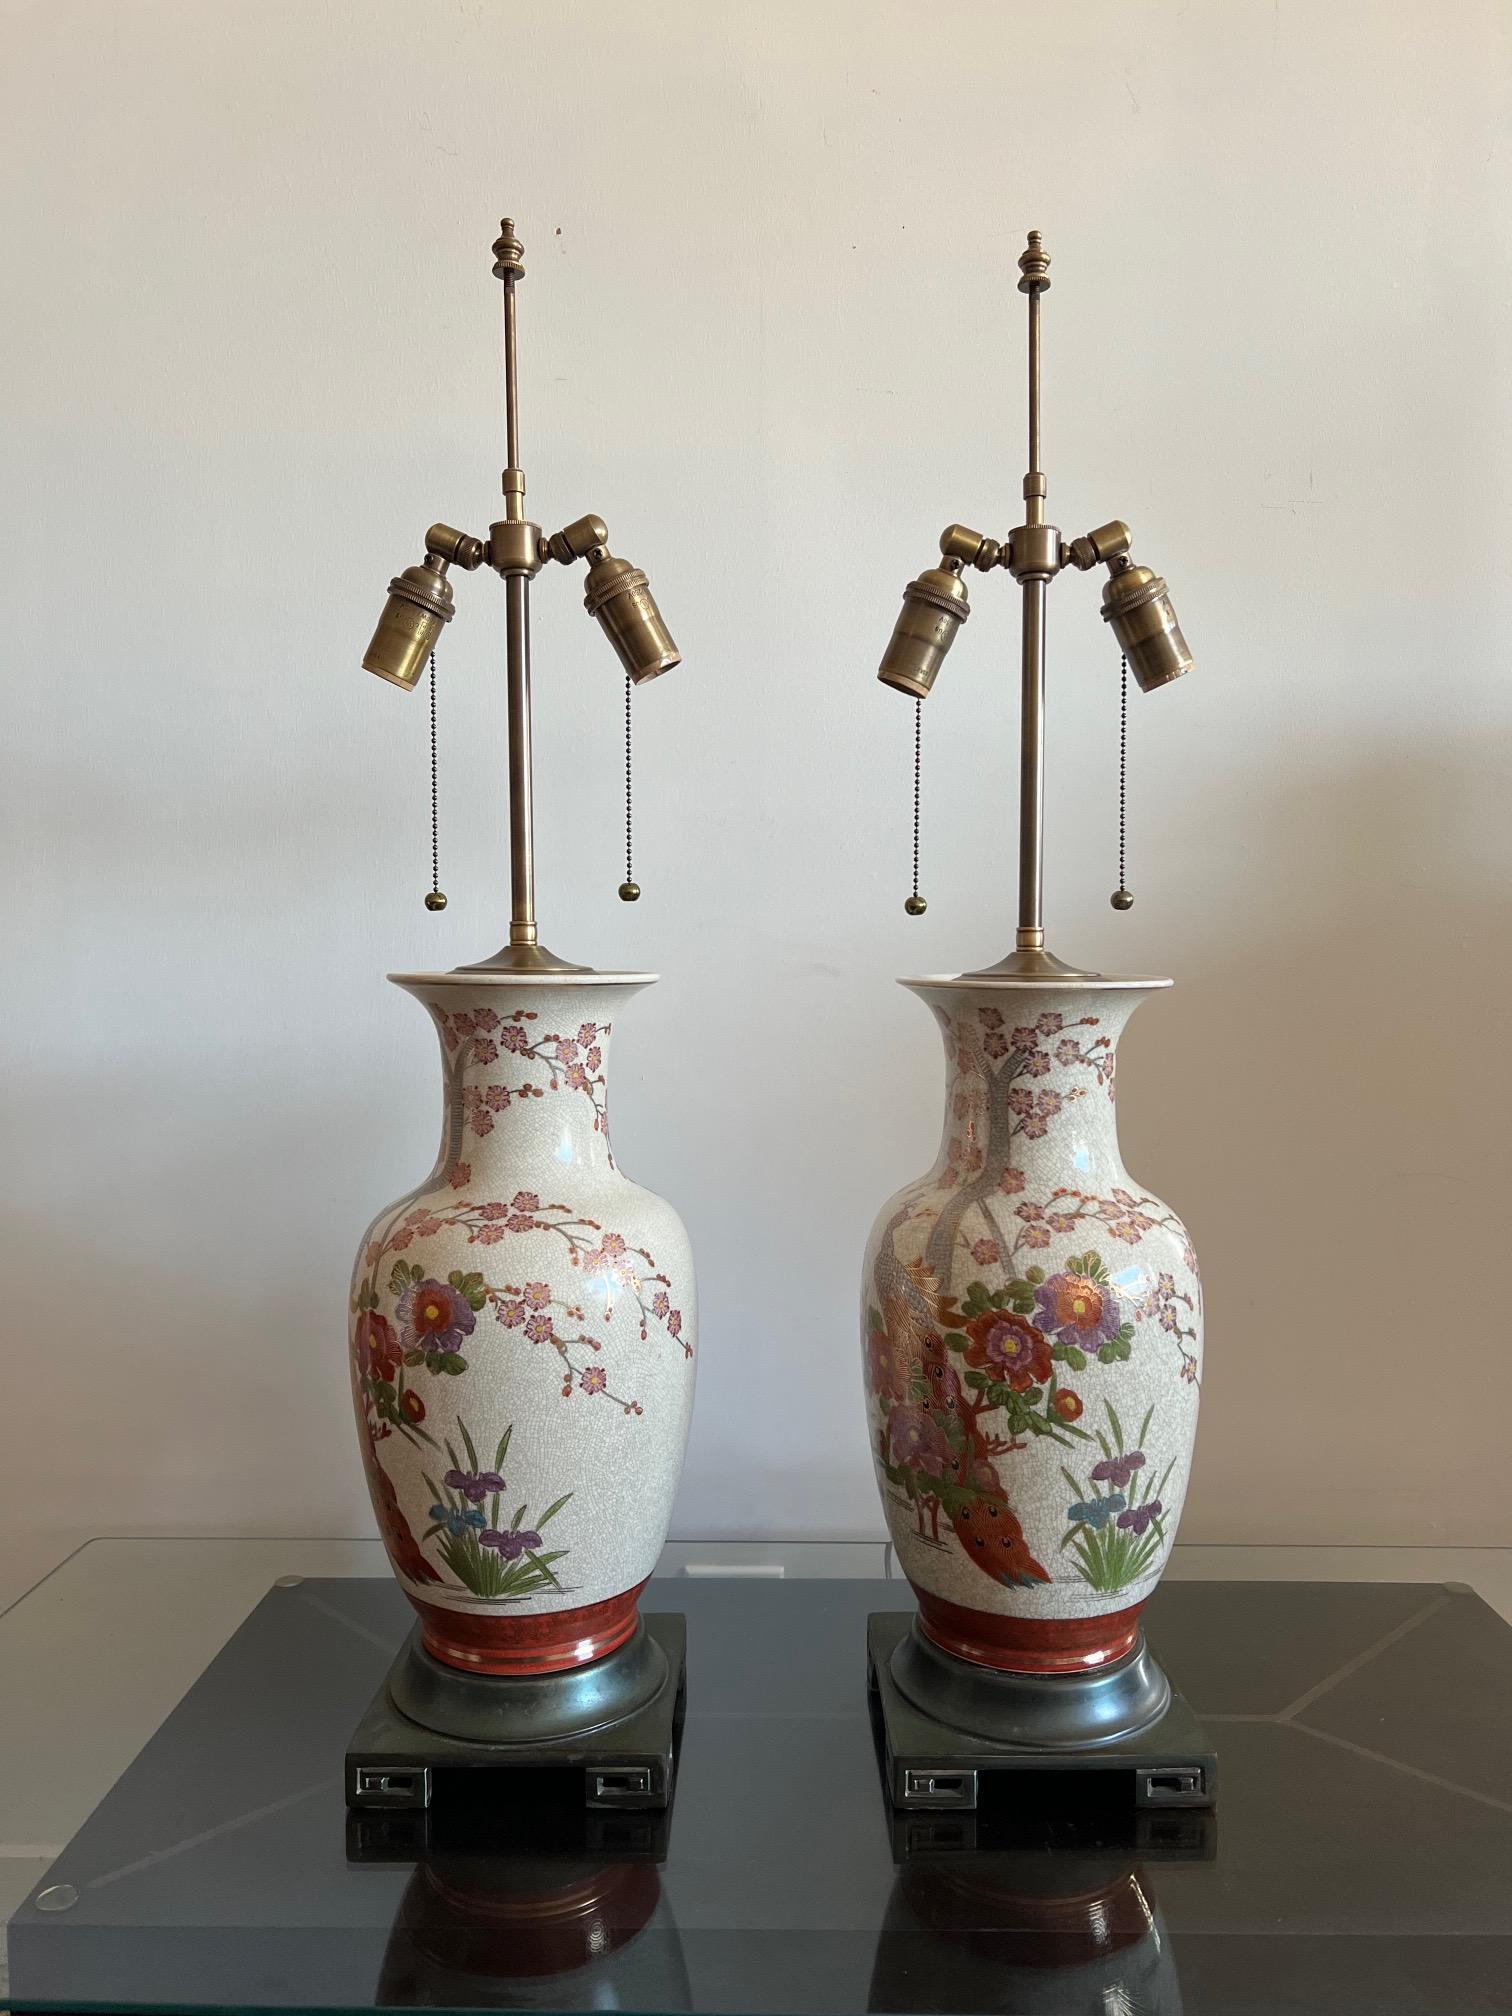 Une paire de belles lampes de table de style chinoiserie, fabriquées au Japon. Marqué 